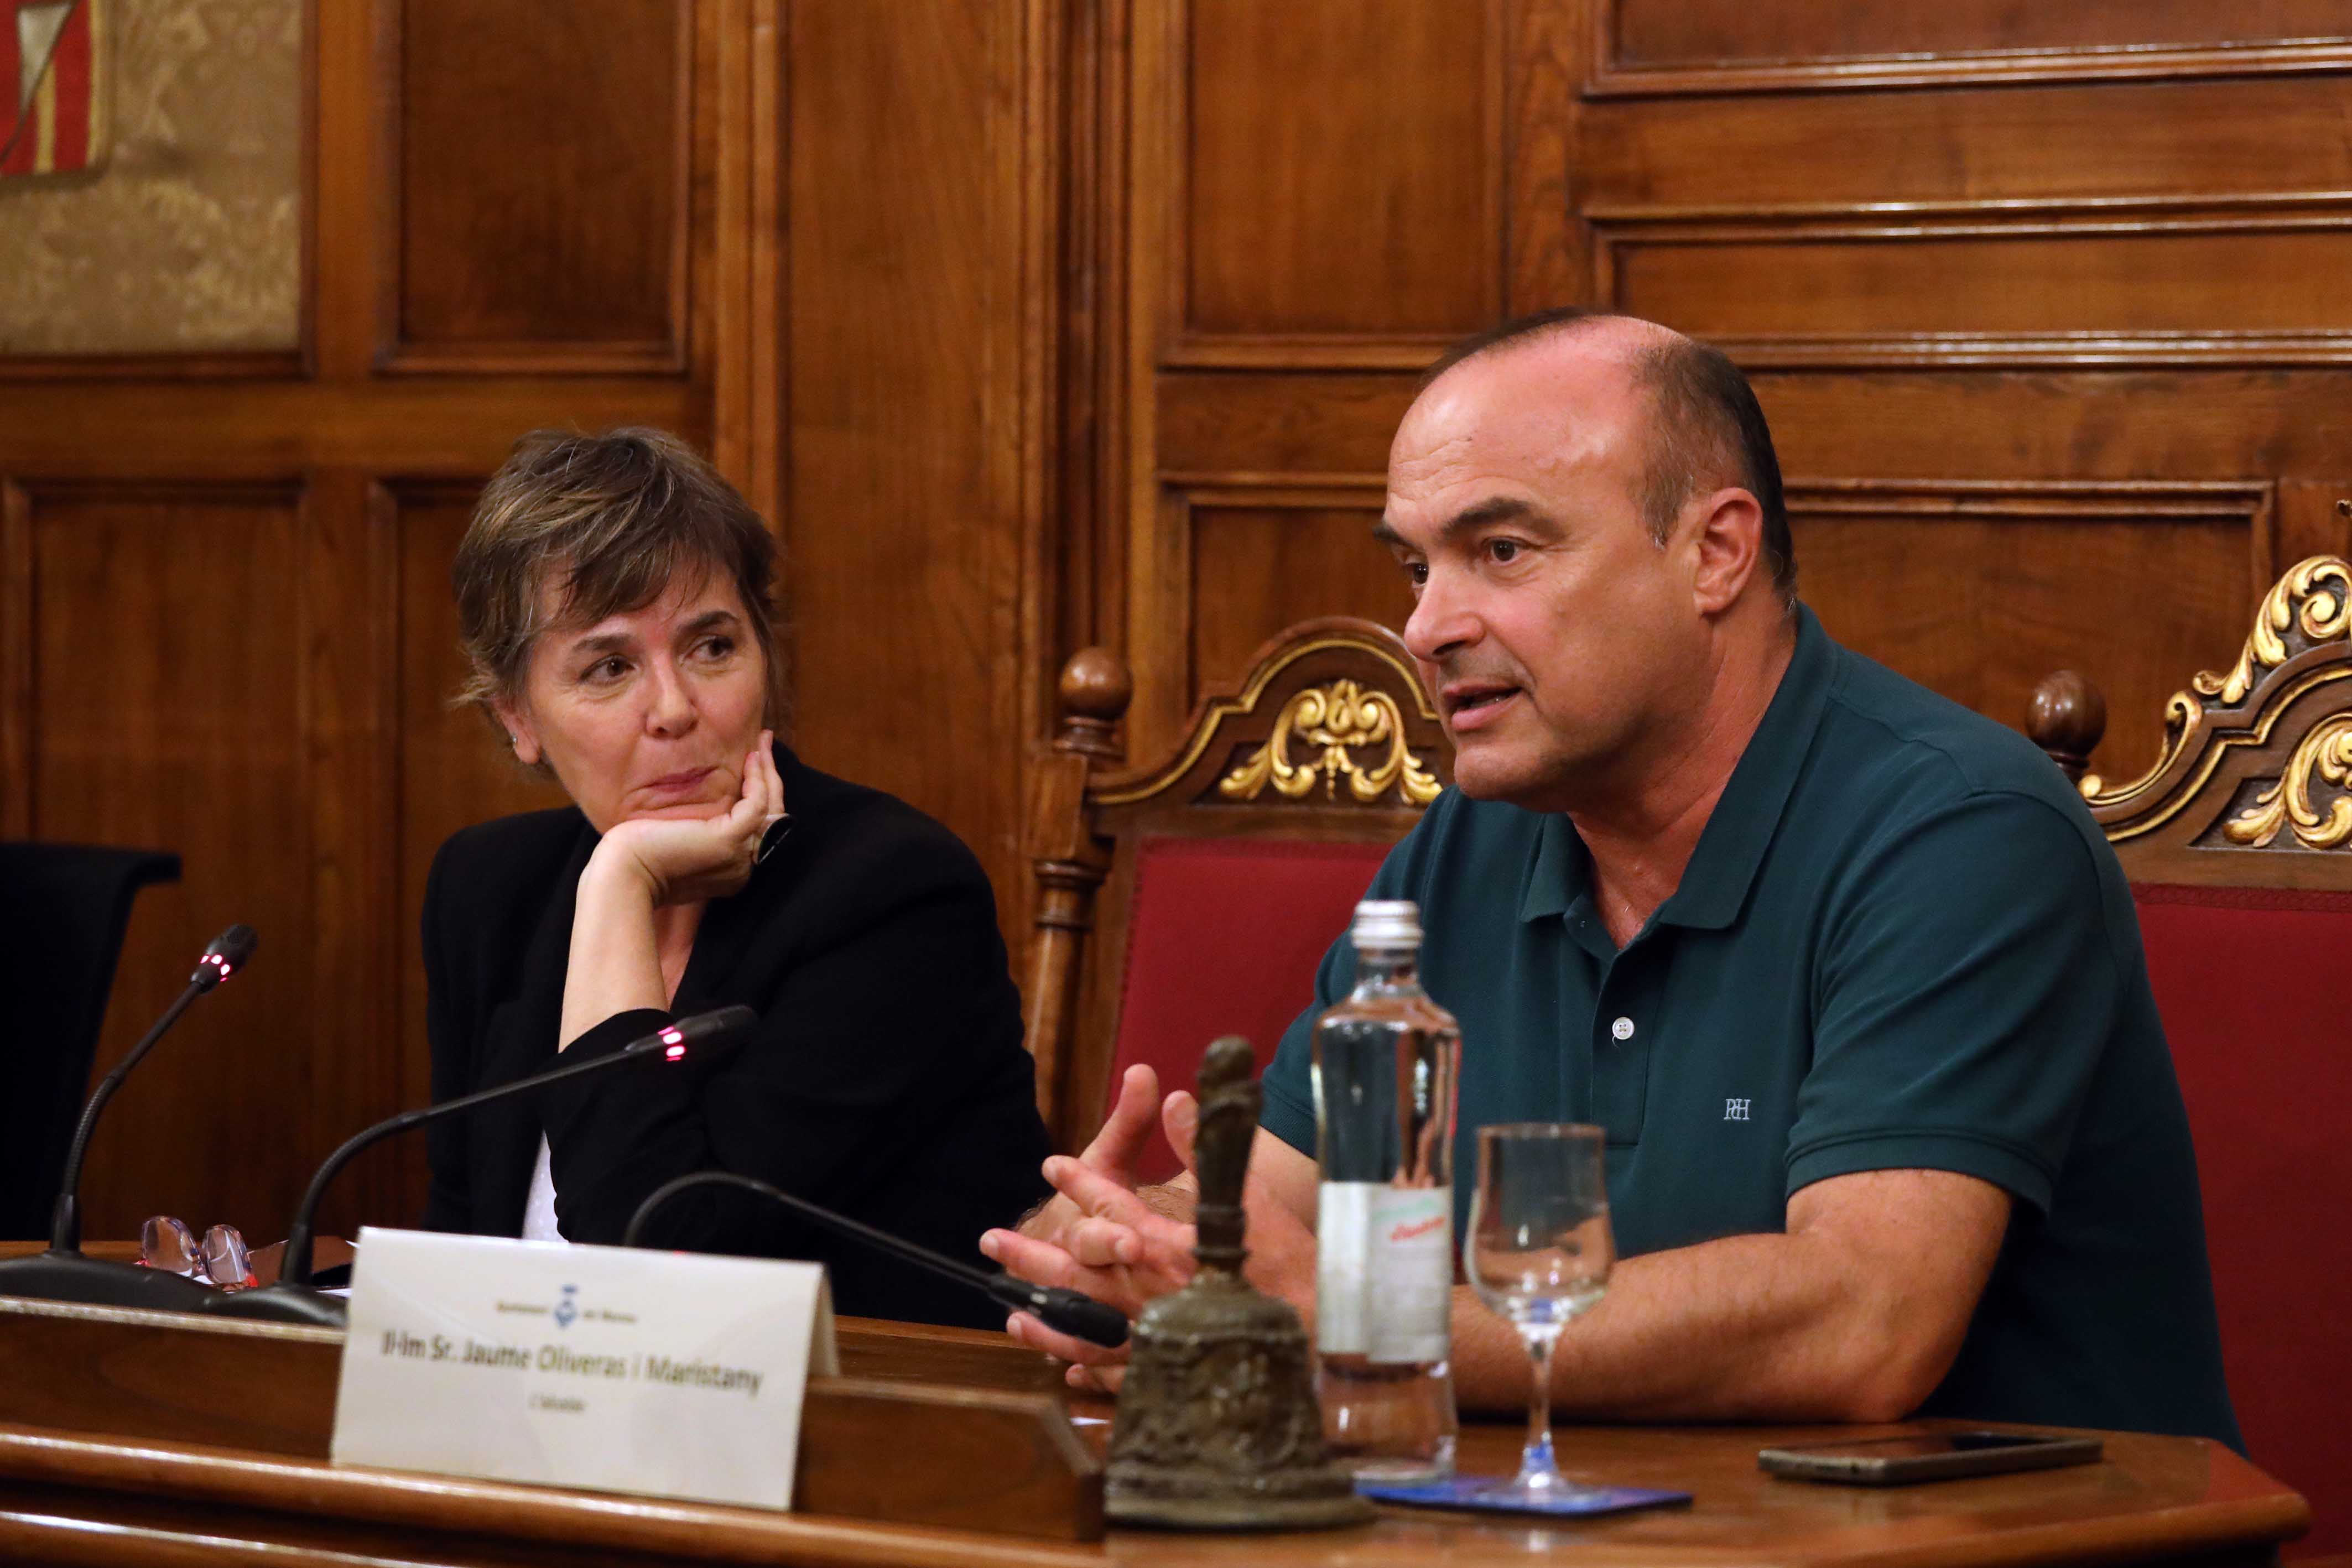 Conferència de Marta Marín-Dòmine a l'Ajuntament del Masnou amb motiu de la Diada Nacional de Catalunya.